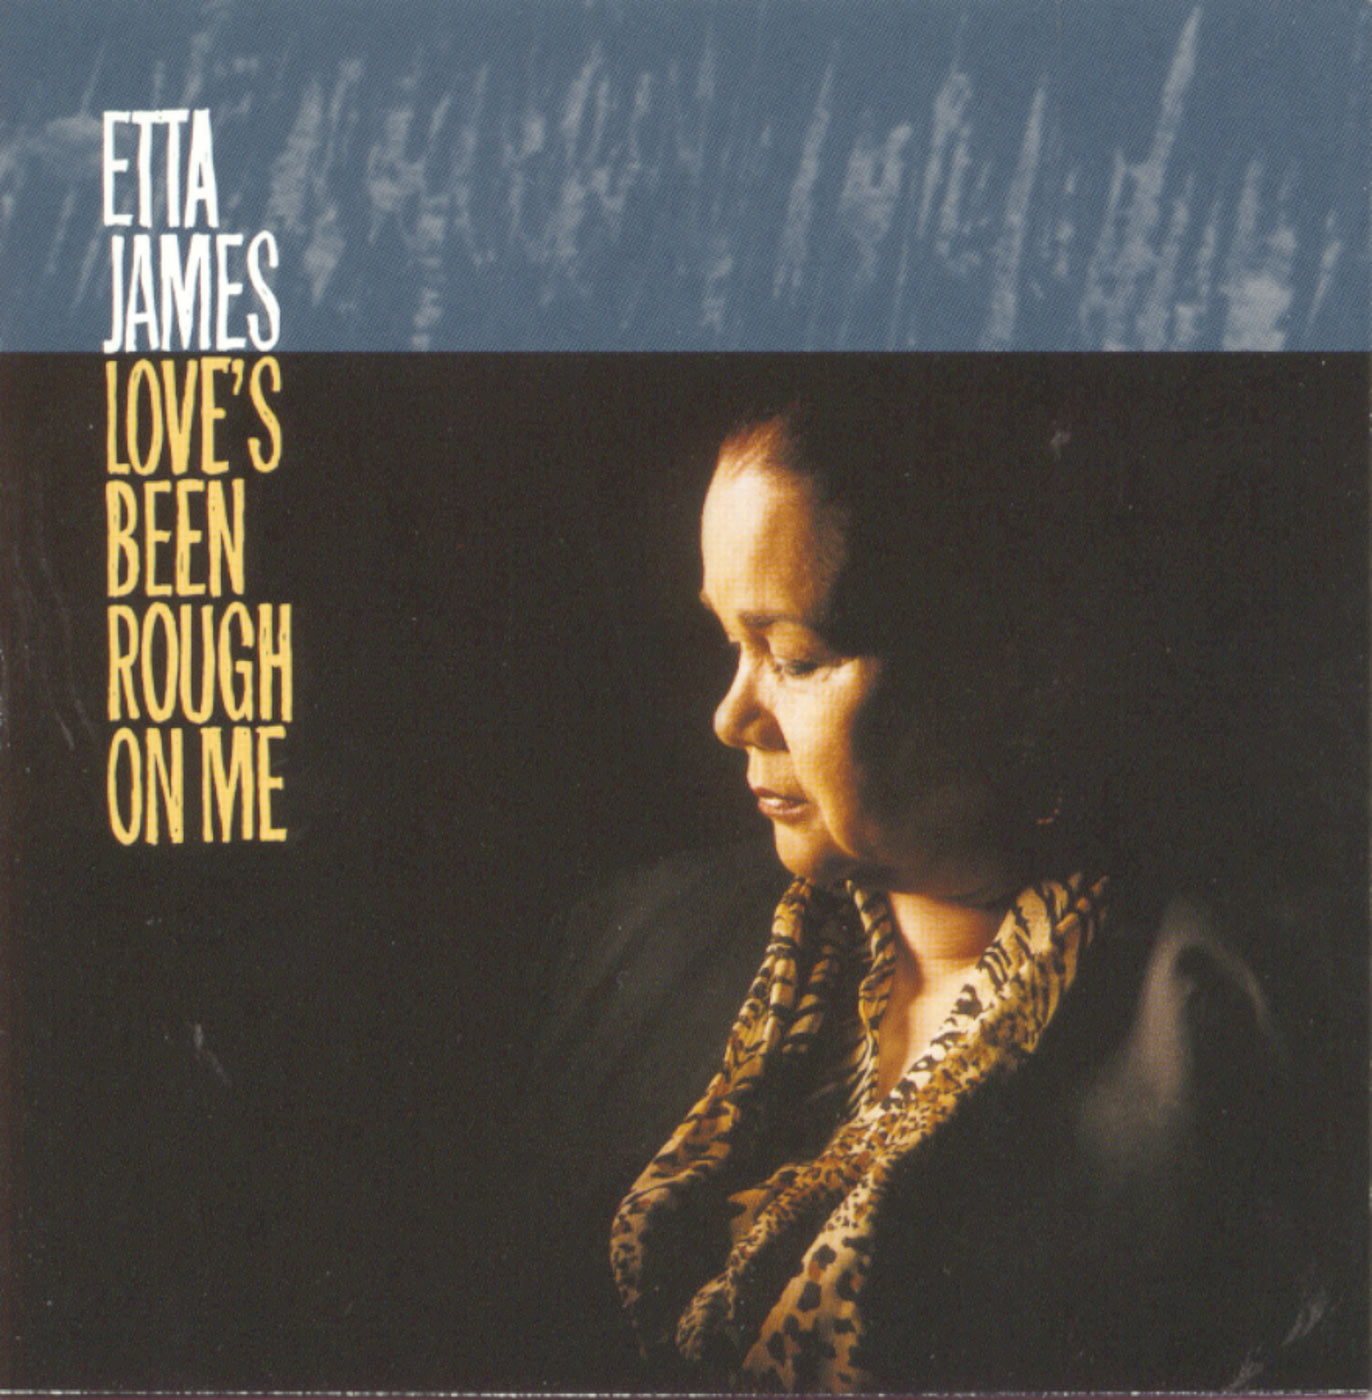 Etta James – Love＇s Been Rough On Me【44.1kHz／16bit】英国区-OppsUpro音乐帝国